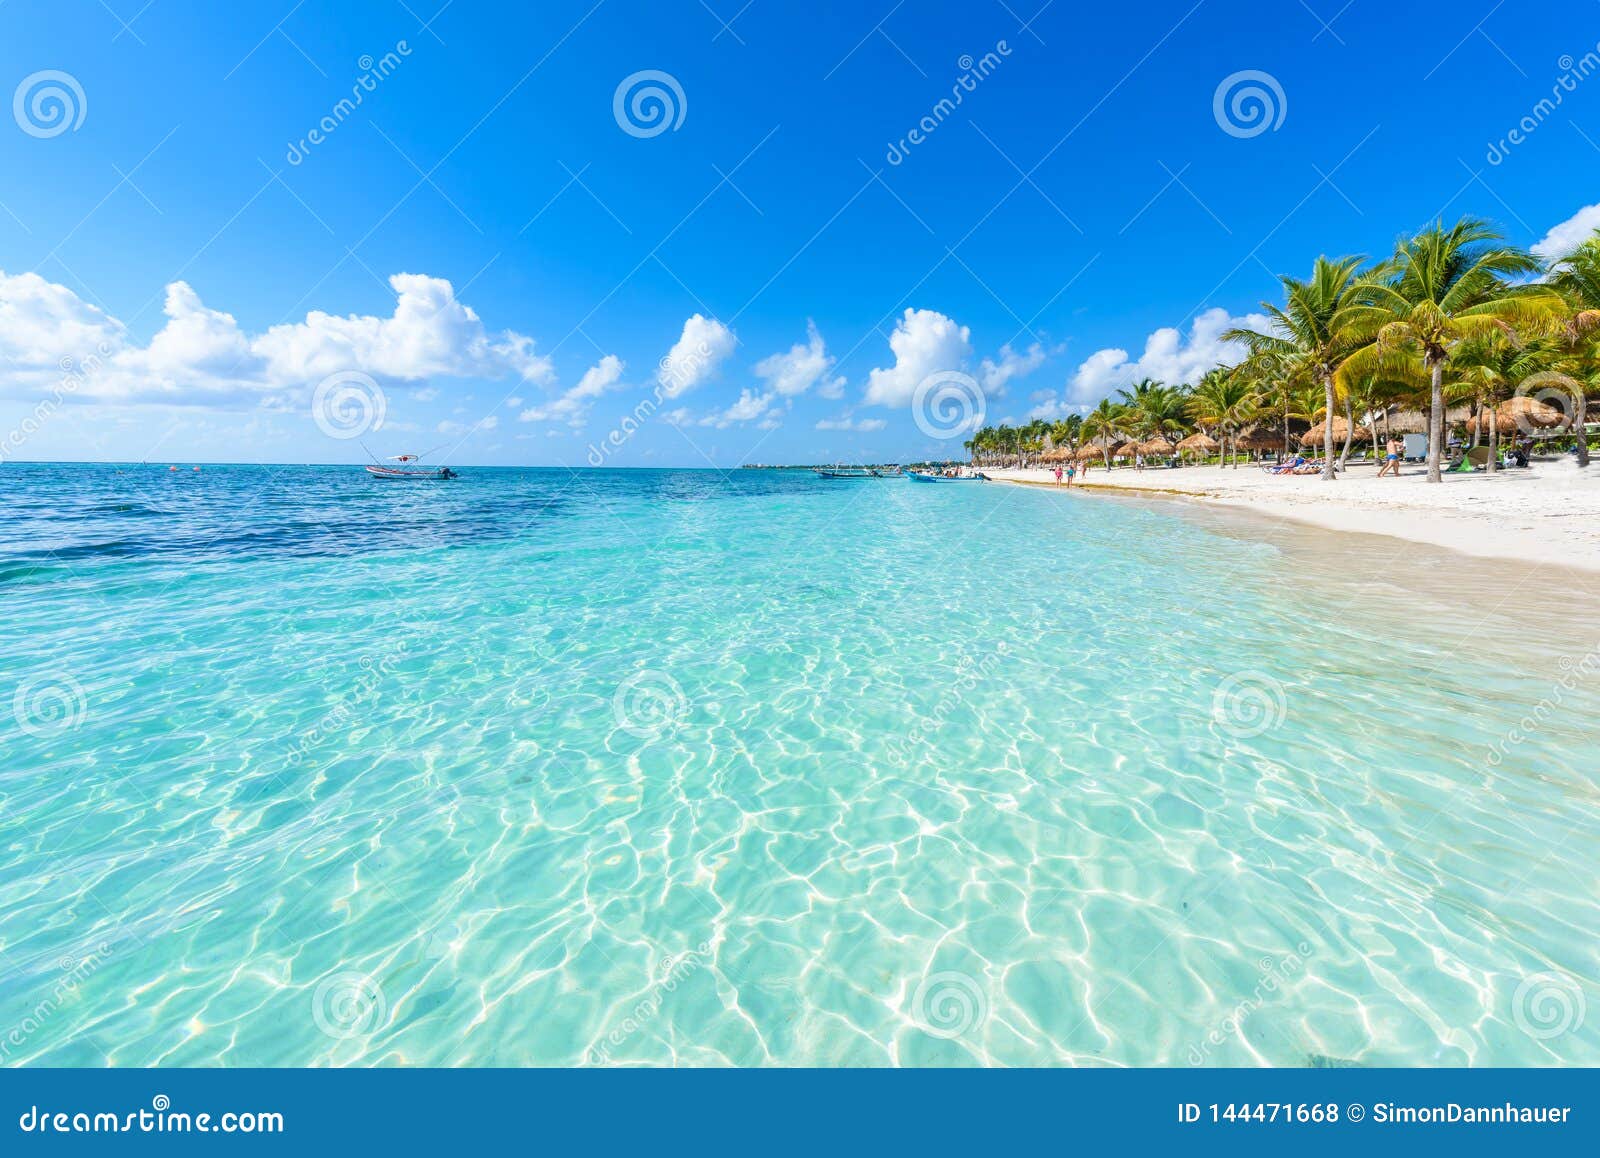 Akumal Beach Paradise Bay Beach In Quintana Roo Mexiko Caribbean Coast Foto De Stock